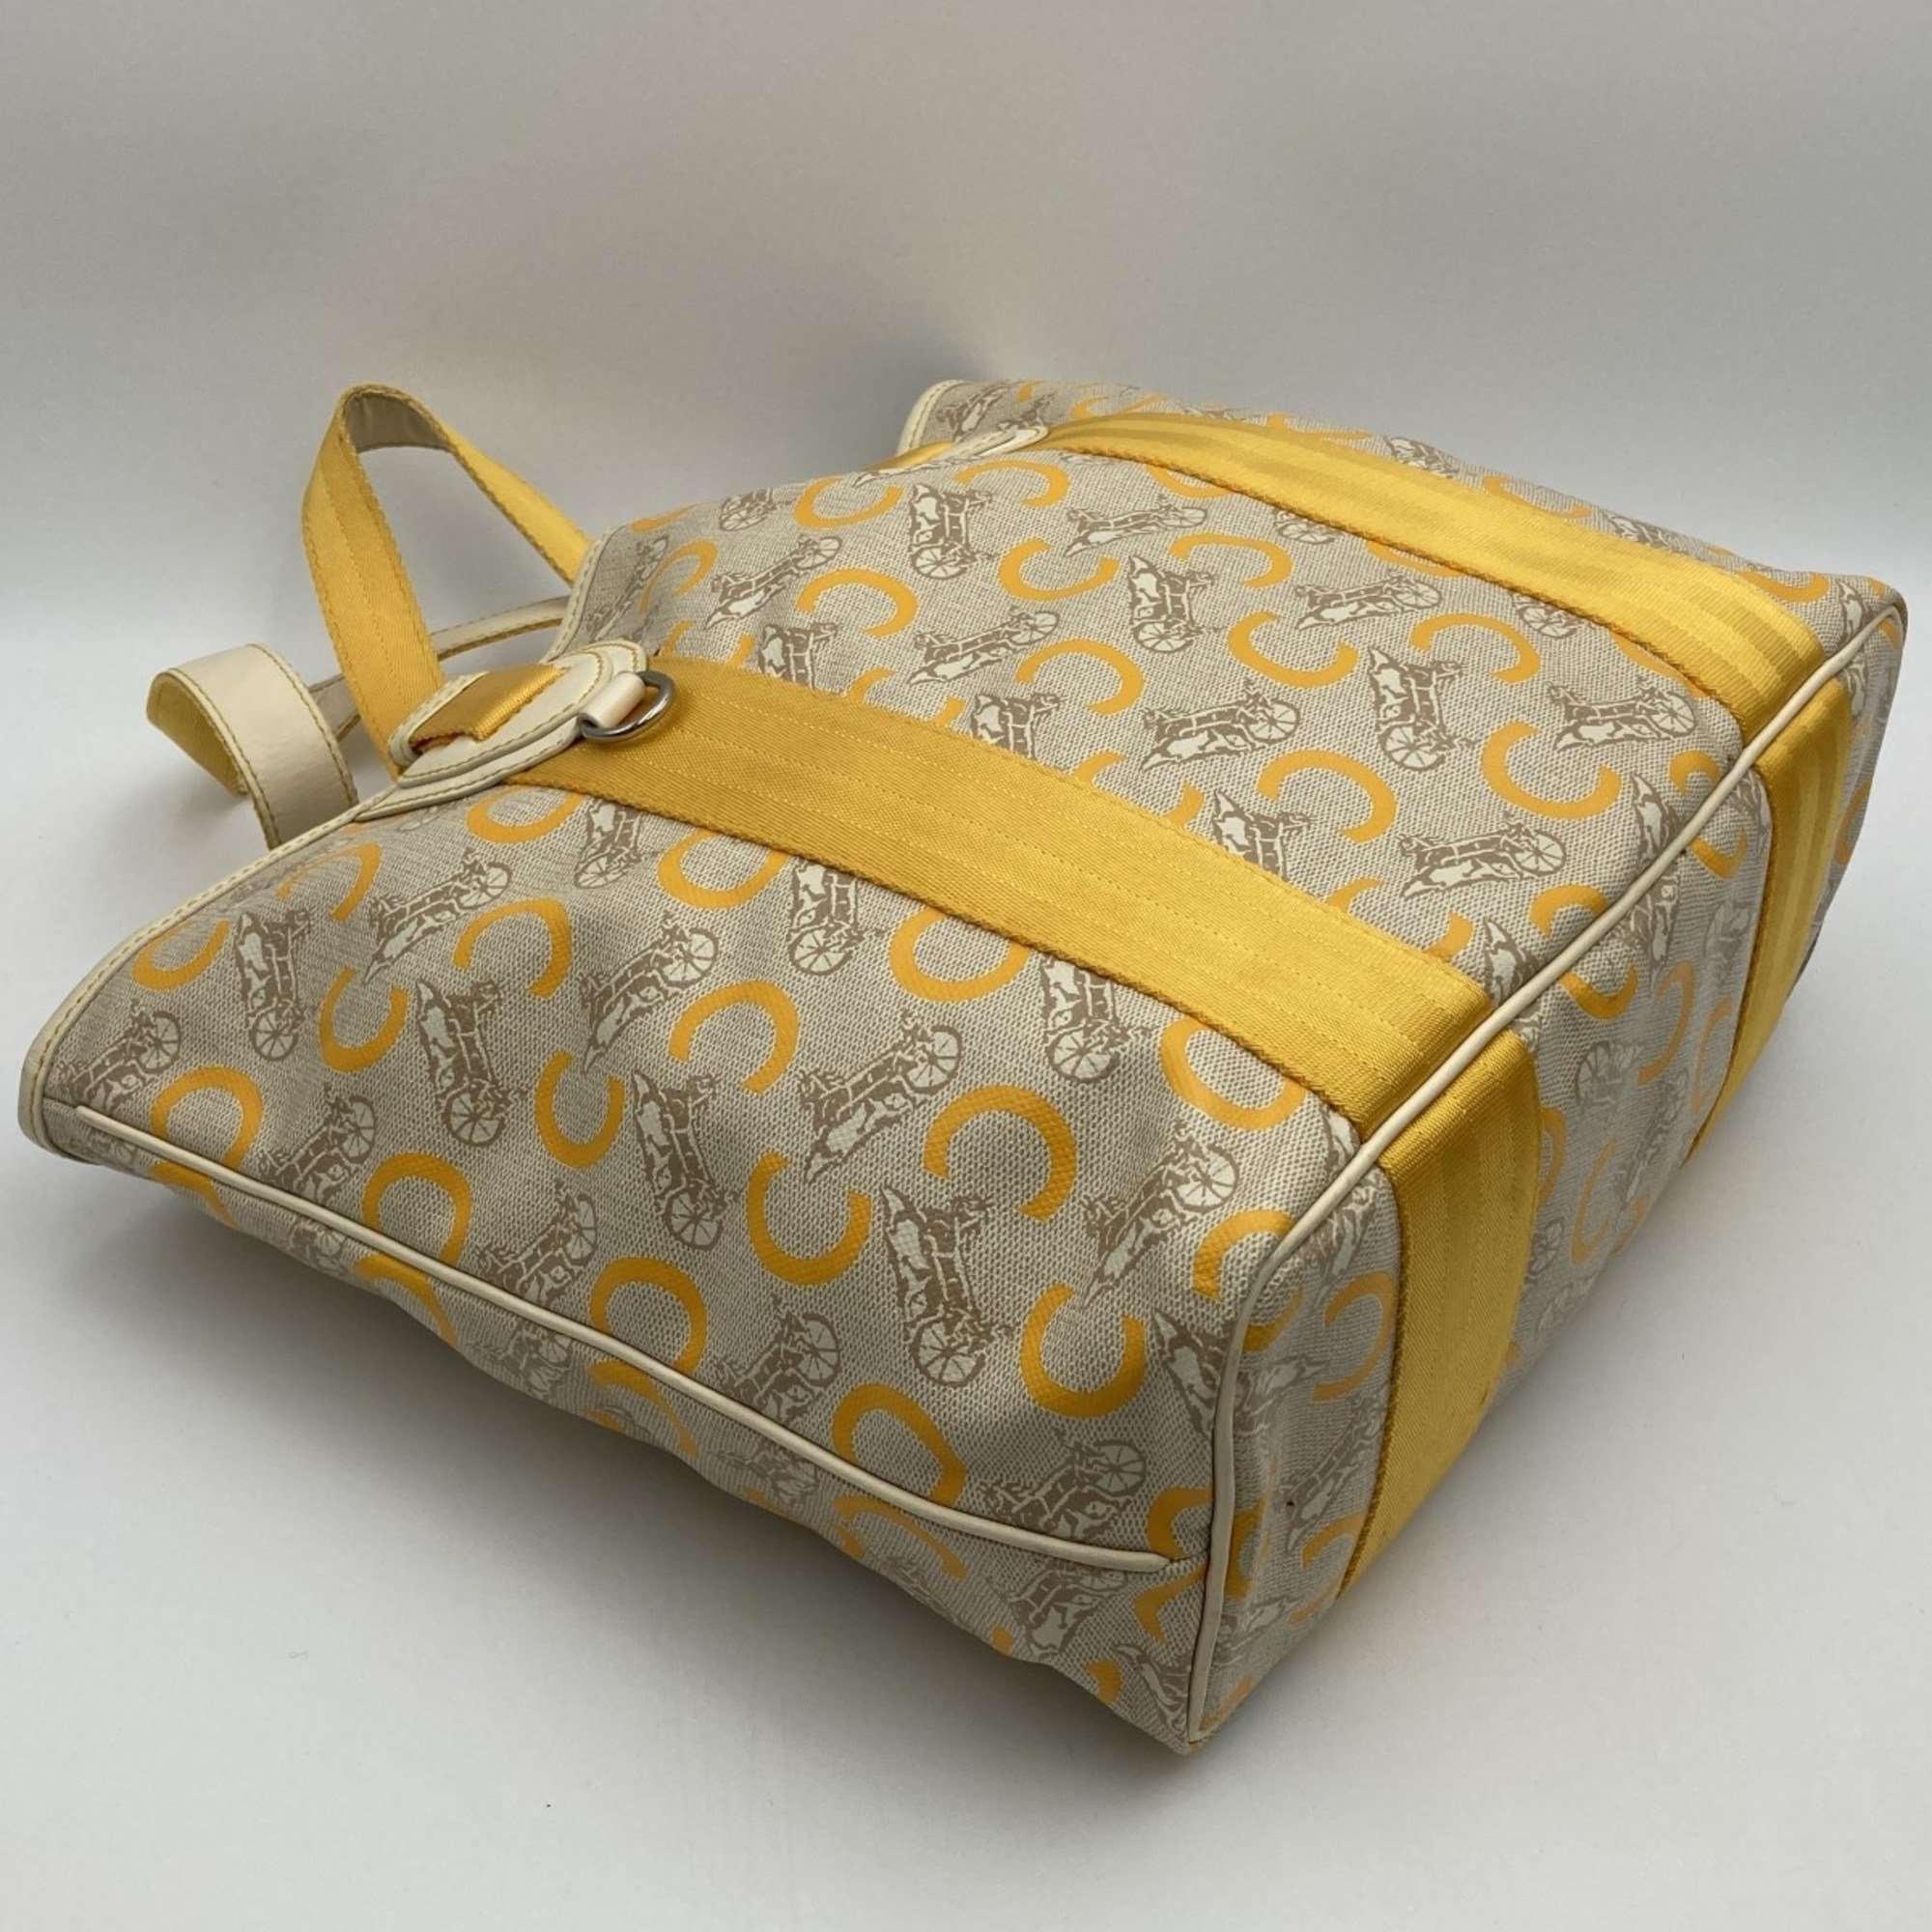 CELINE Celine Tote Bag C Saluki Carriage Pattern Shoulder Ivory Yellow PVC Ladies SIS0/46 USED